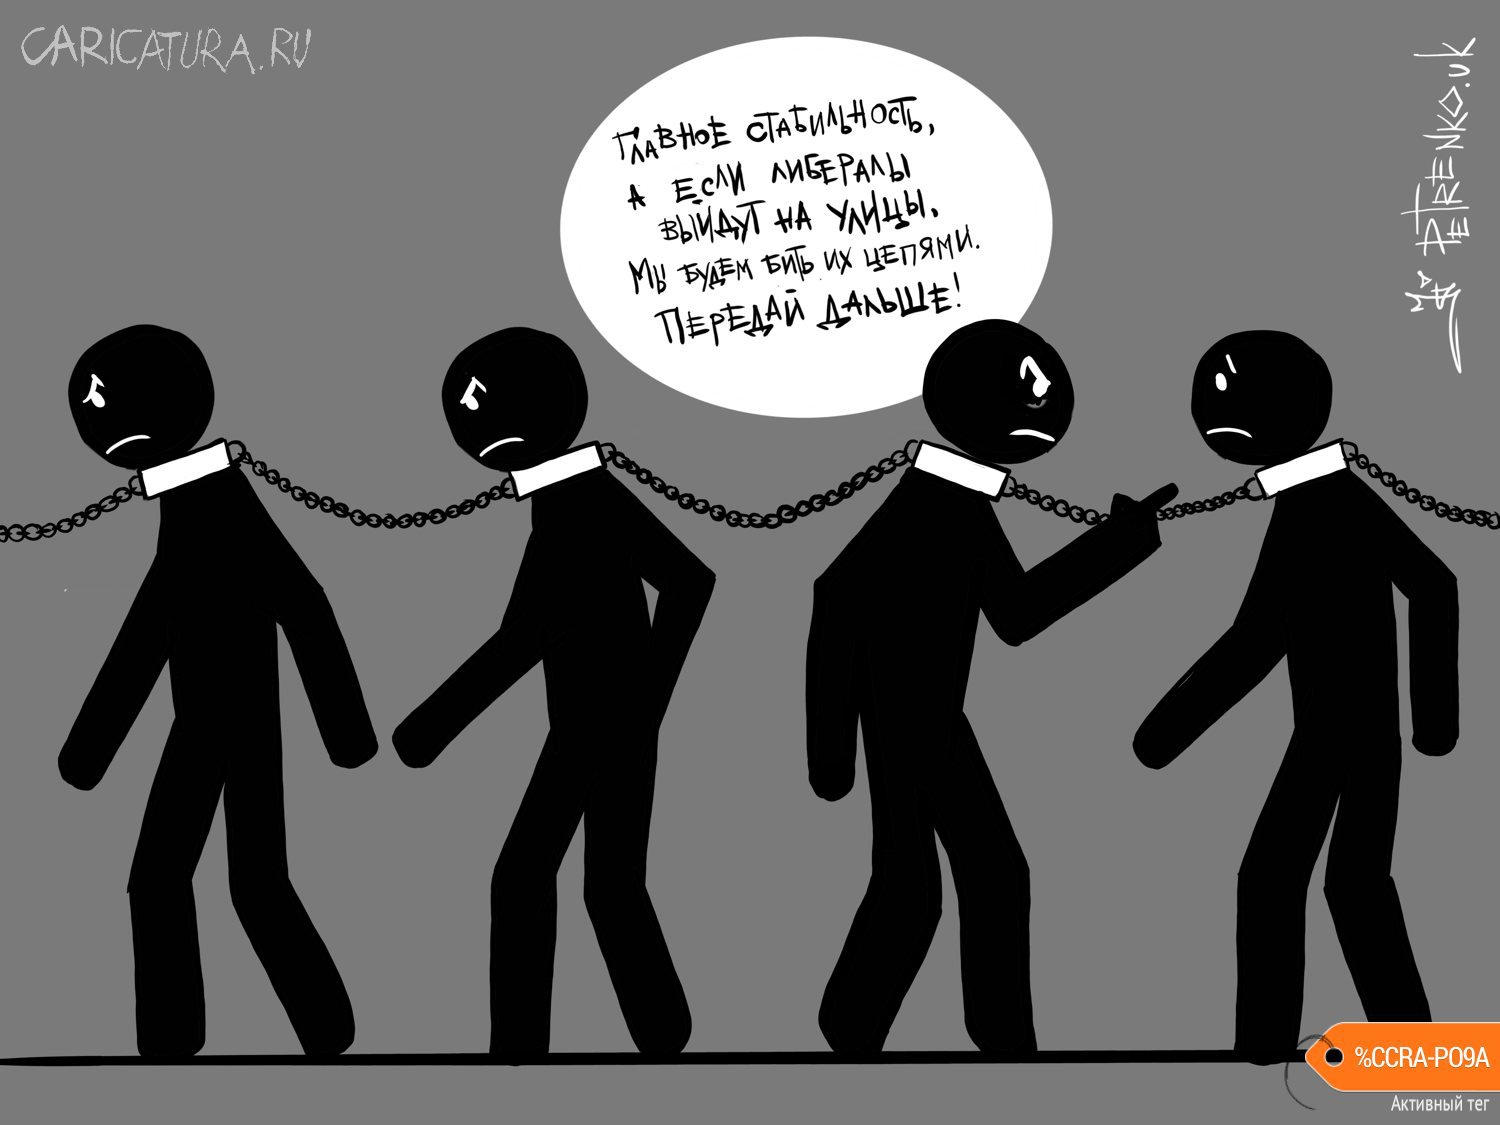 Карикатура "Связанные одной цепью...", Андрей Петренко